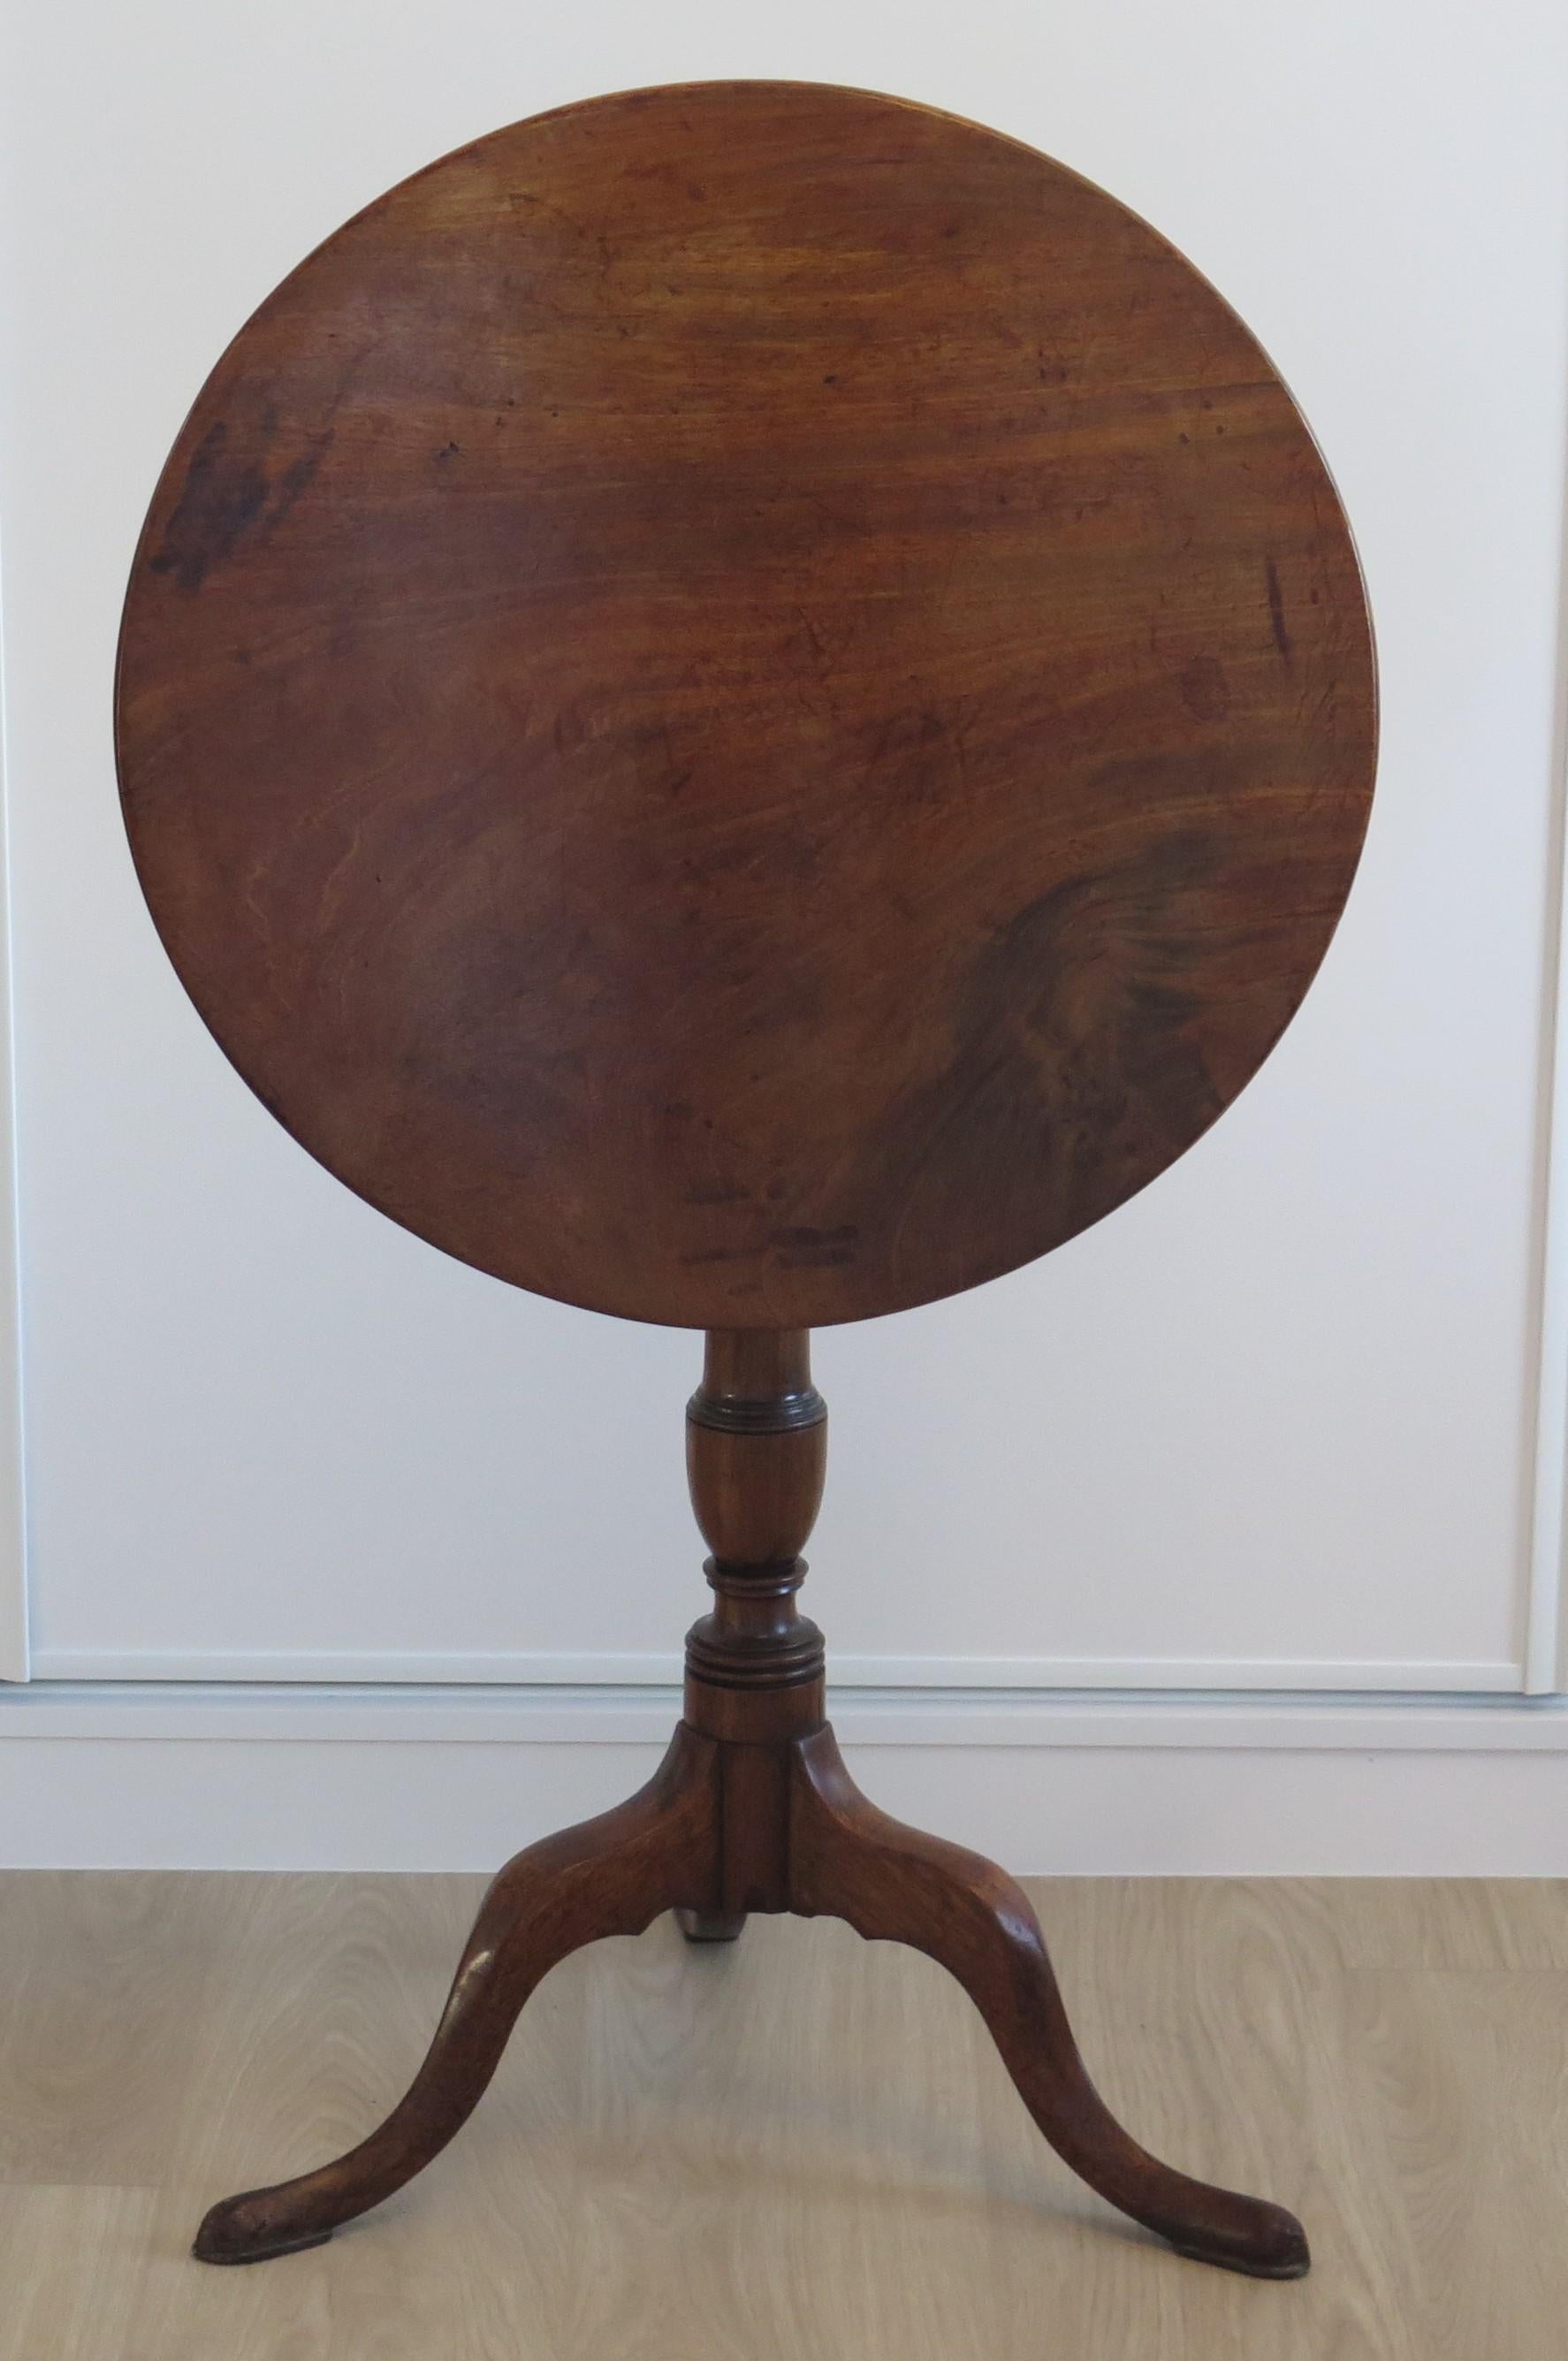 Il s'agit d'une table tripode ou d'une table à vin en bois dur massif, élégante et magnifiquement proportionnée, avec un plateau basculant et datant de la période Chippendale du milieu de l'époque géorgienne, vers 1760.

Le plateau circulaire est